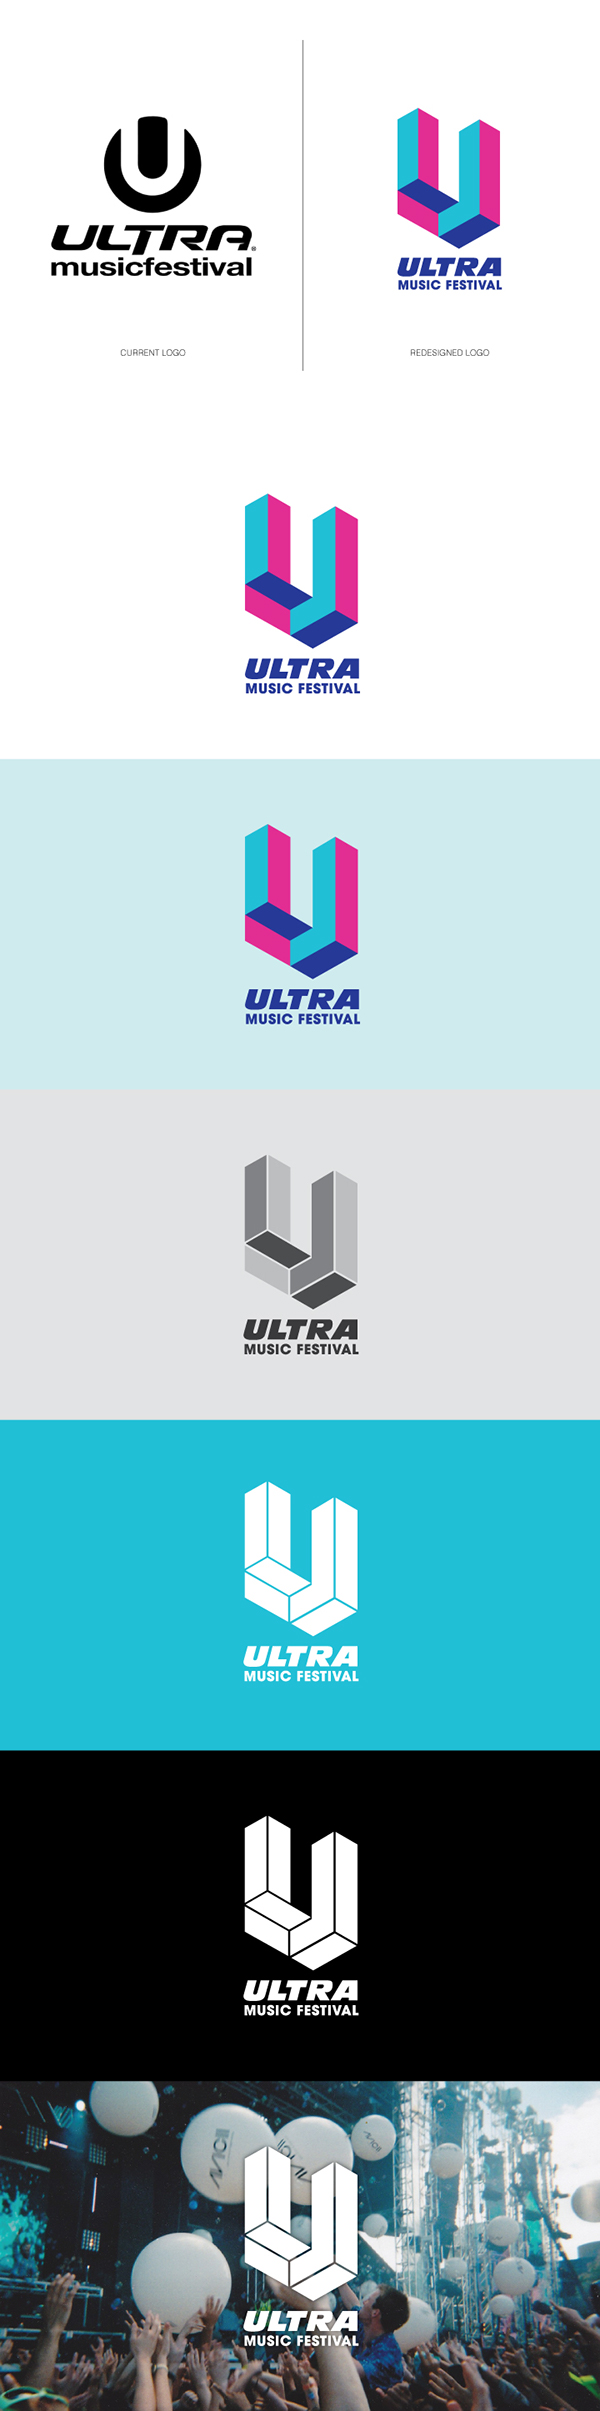 Ultra Music Festival Rebrand